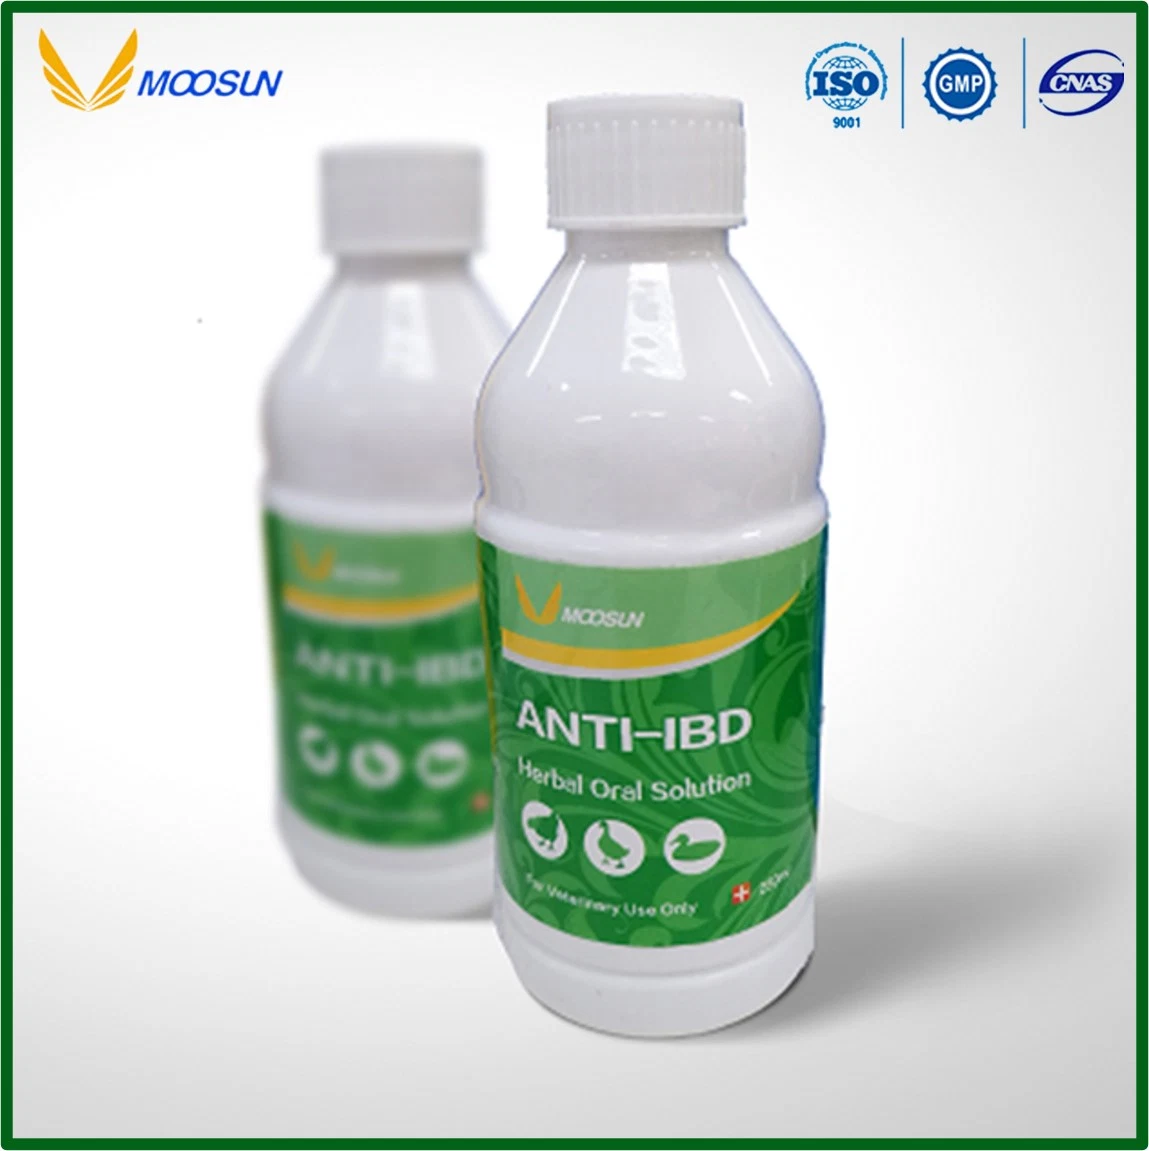 Poultry Medicine Anti-Ibd Herbal Oral Solution Veterinary Drug